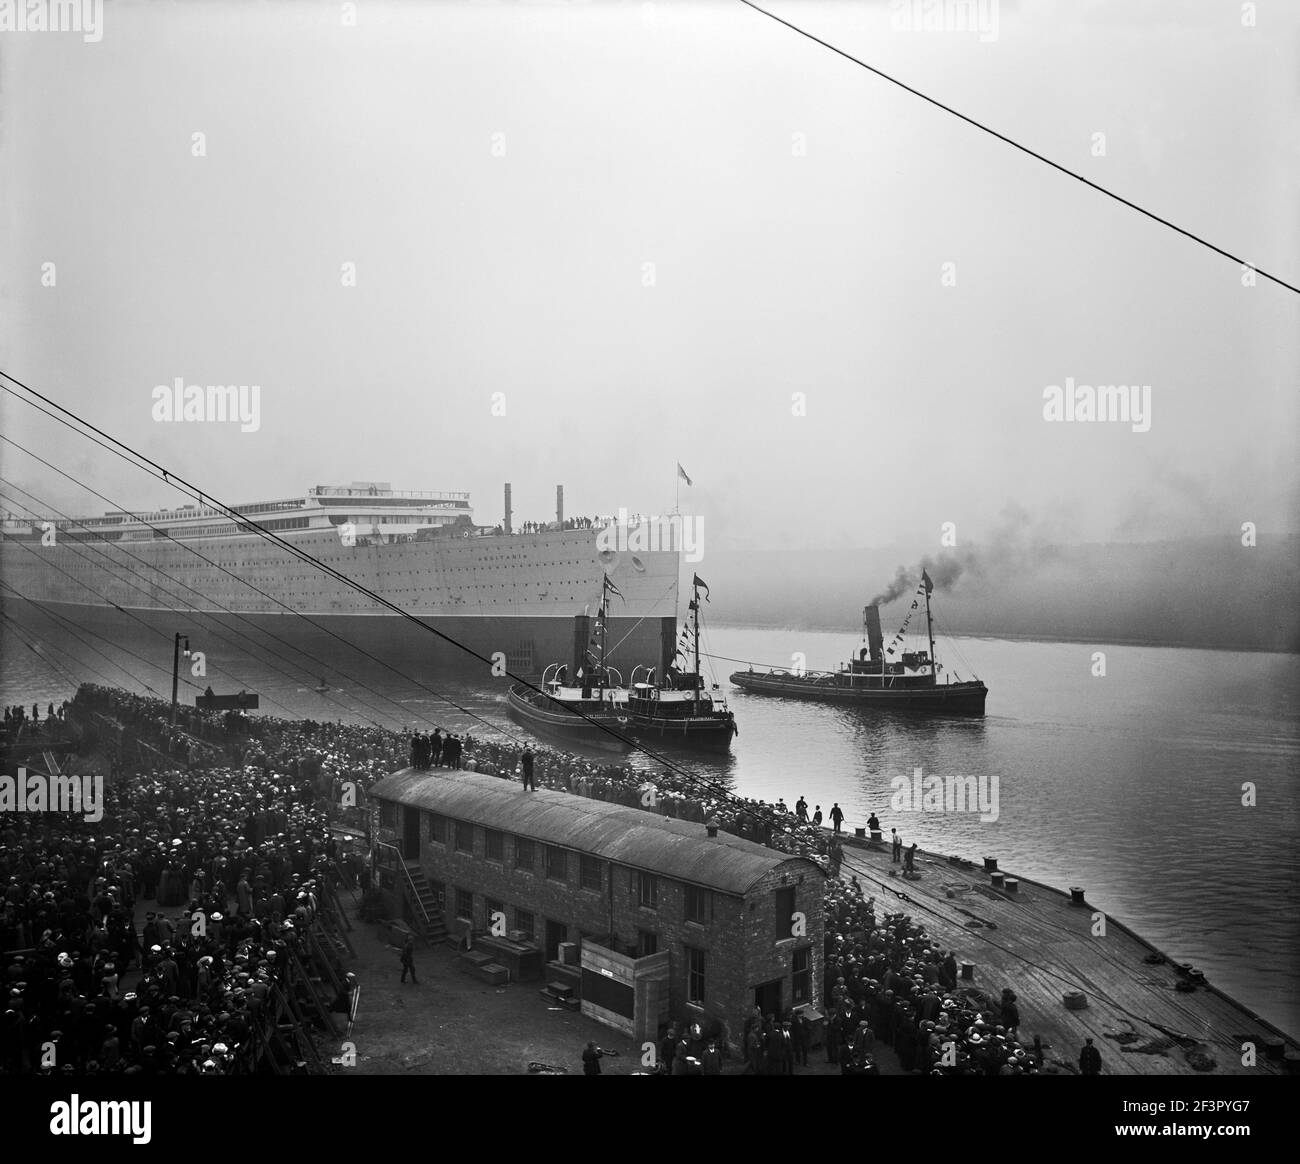 RMS AQUITANIA. Lancio, 21 aprile 1913. L'Aquitania fu il terzo dei Cunard Line Express Ocean Lines (dopo la Mauretania e Lusitania), e. Foto Stock